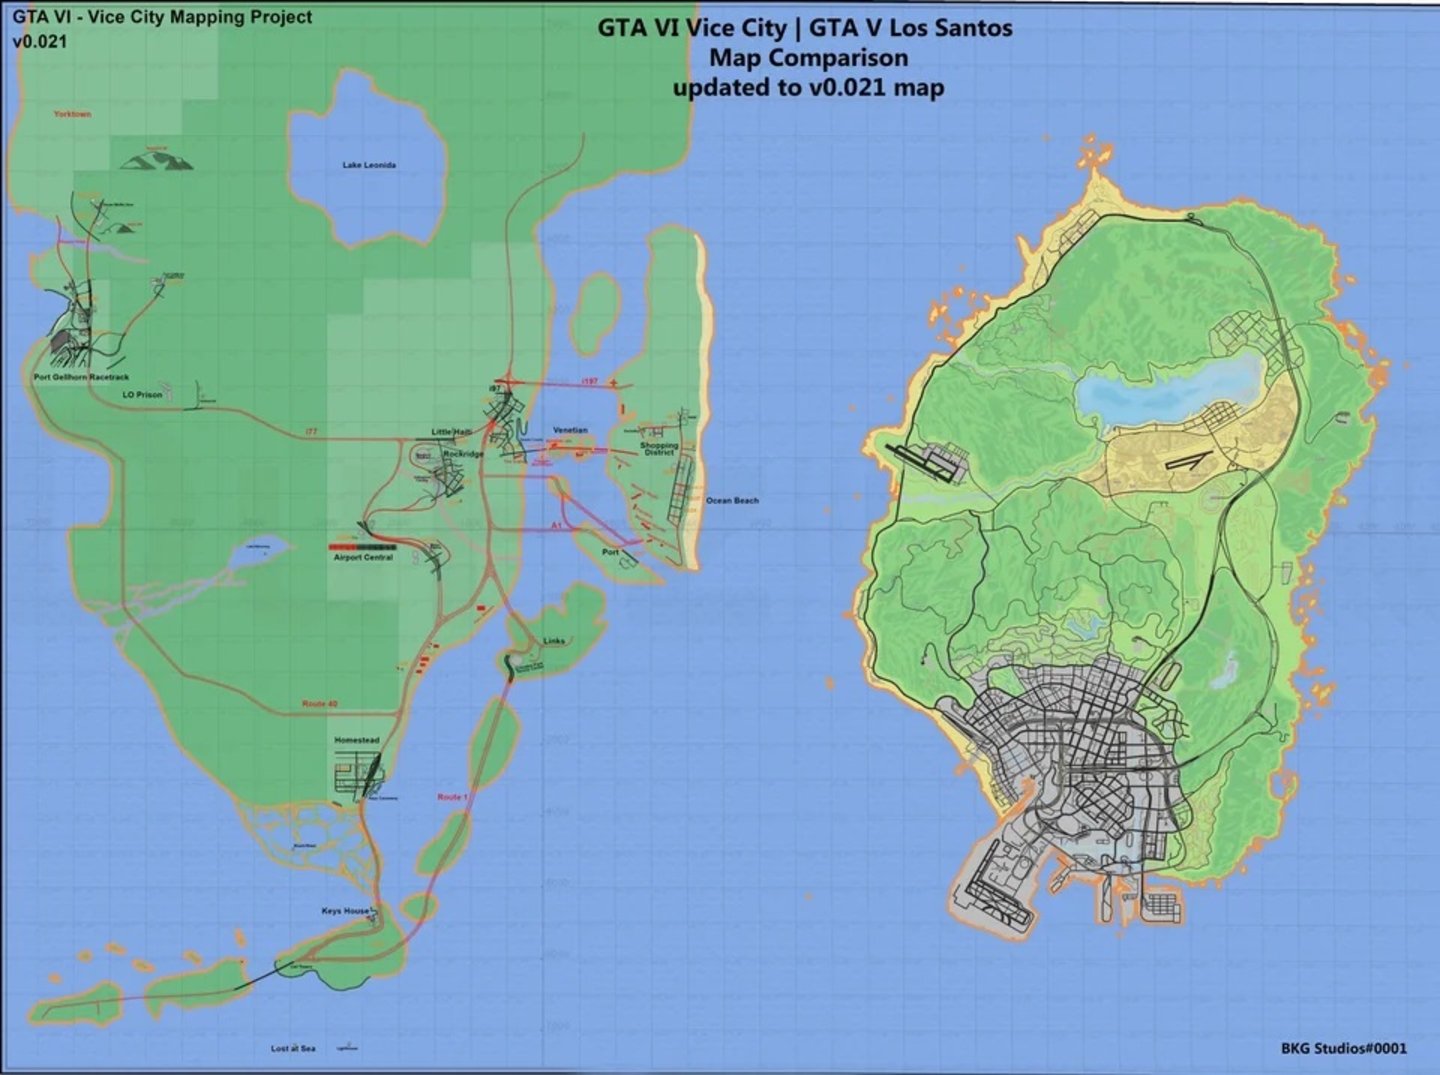 Esta imagen demuestra lo grande que debería ser el mapa de GTA VI respecto a GTA V